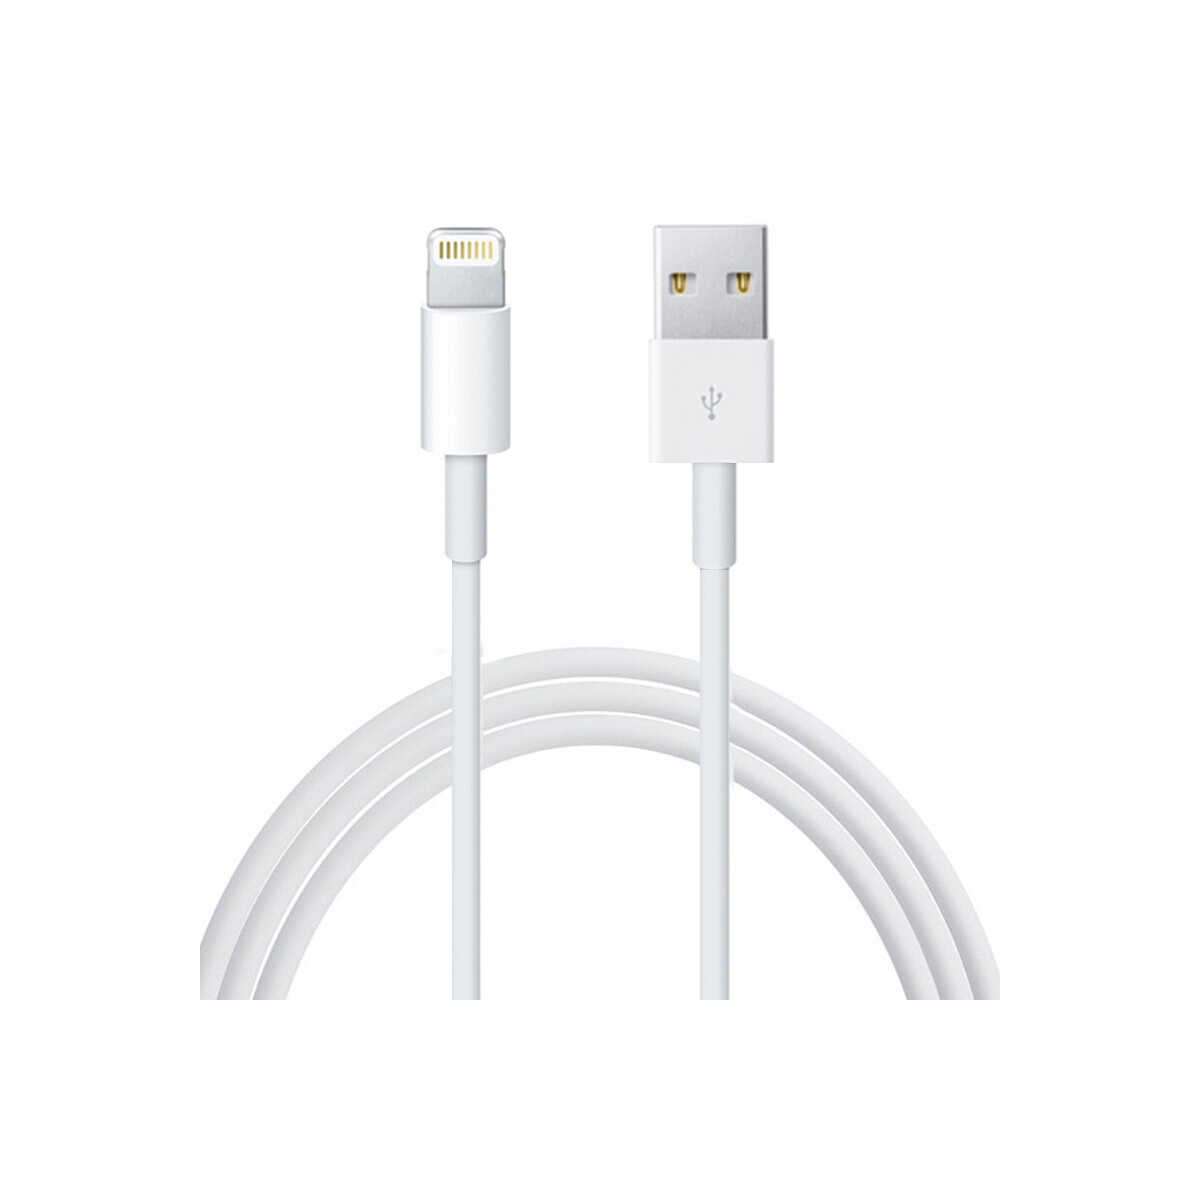 Apple 苹果 原装 Lightning to USB 连接线